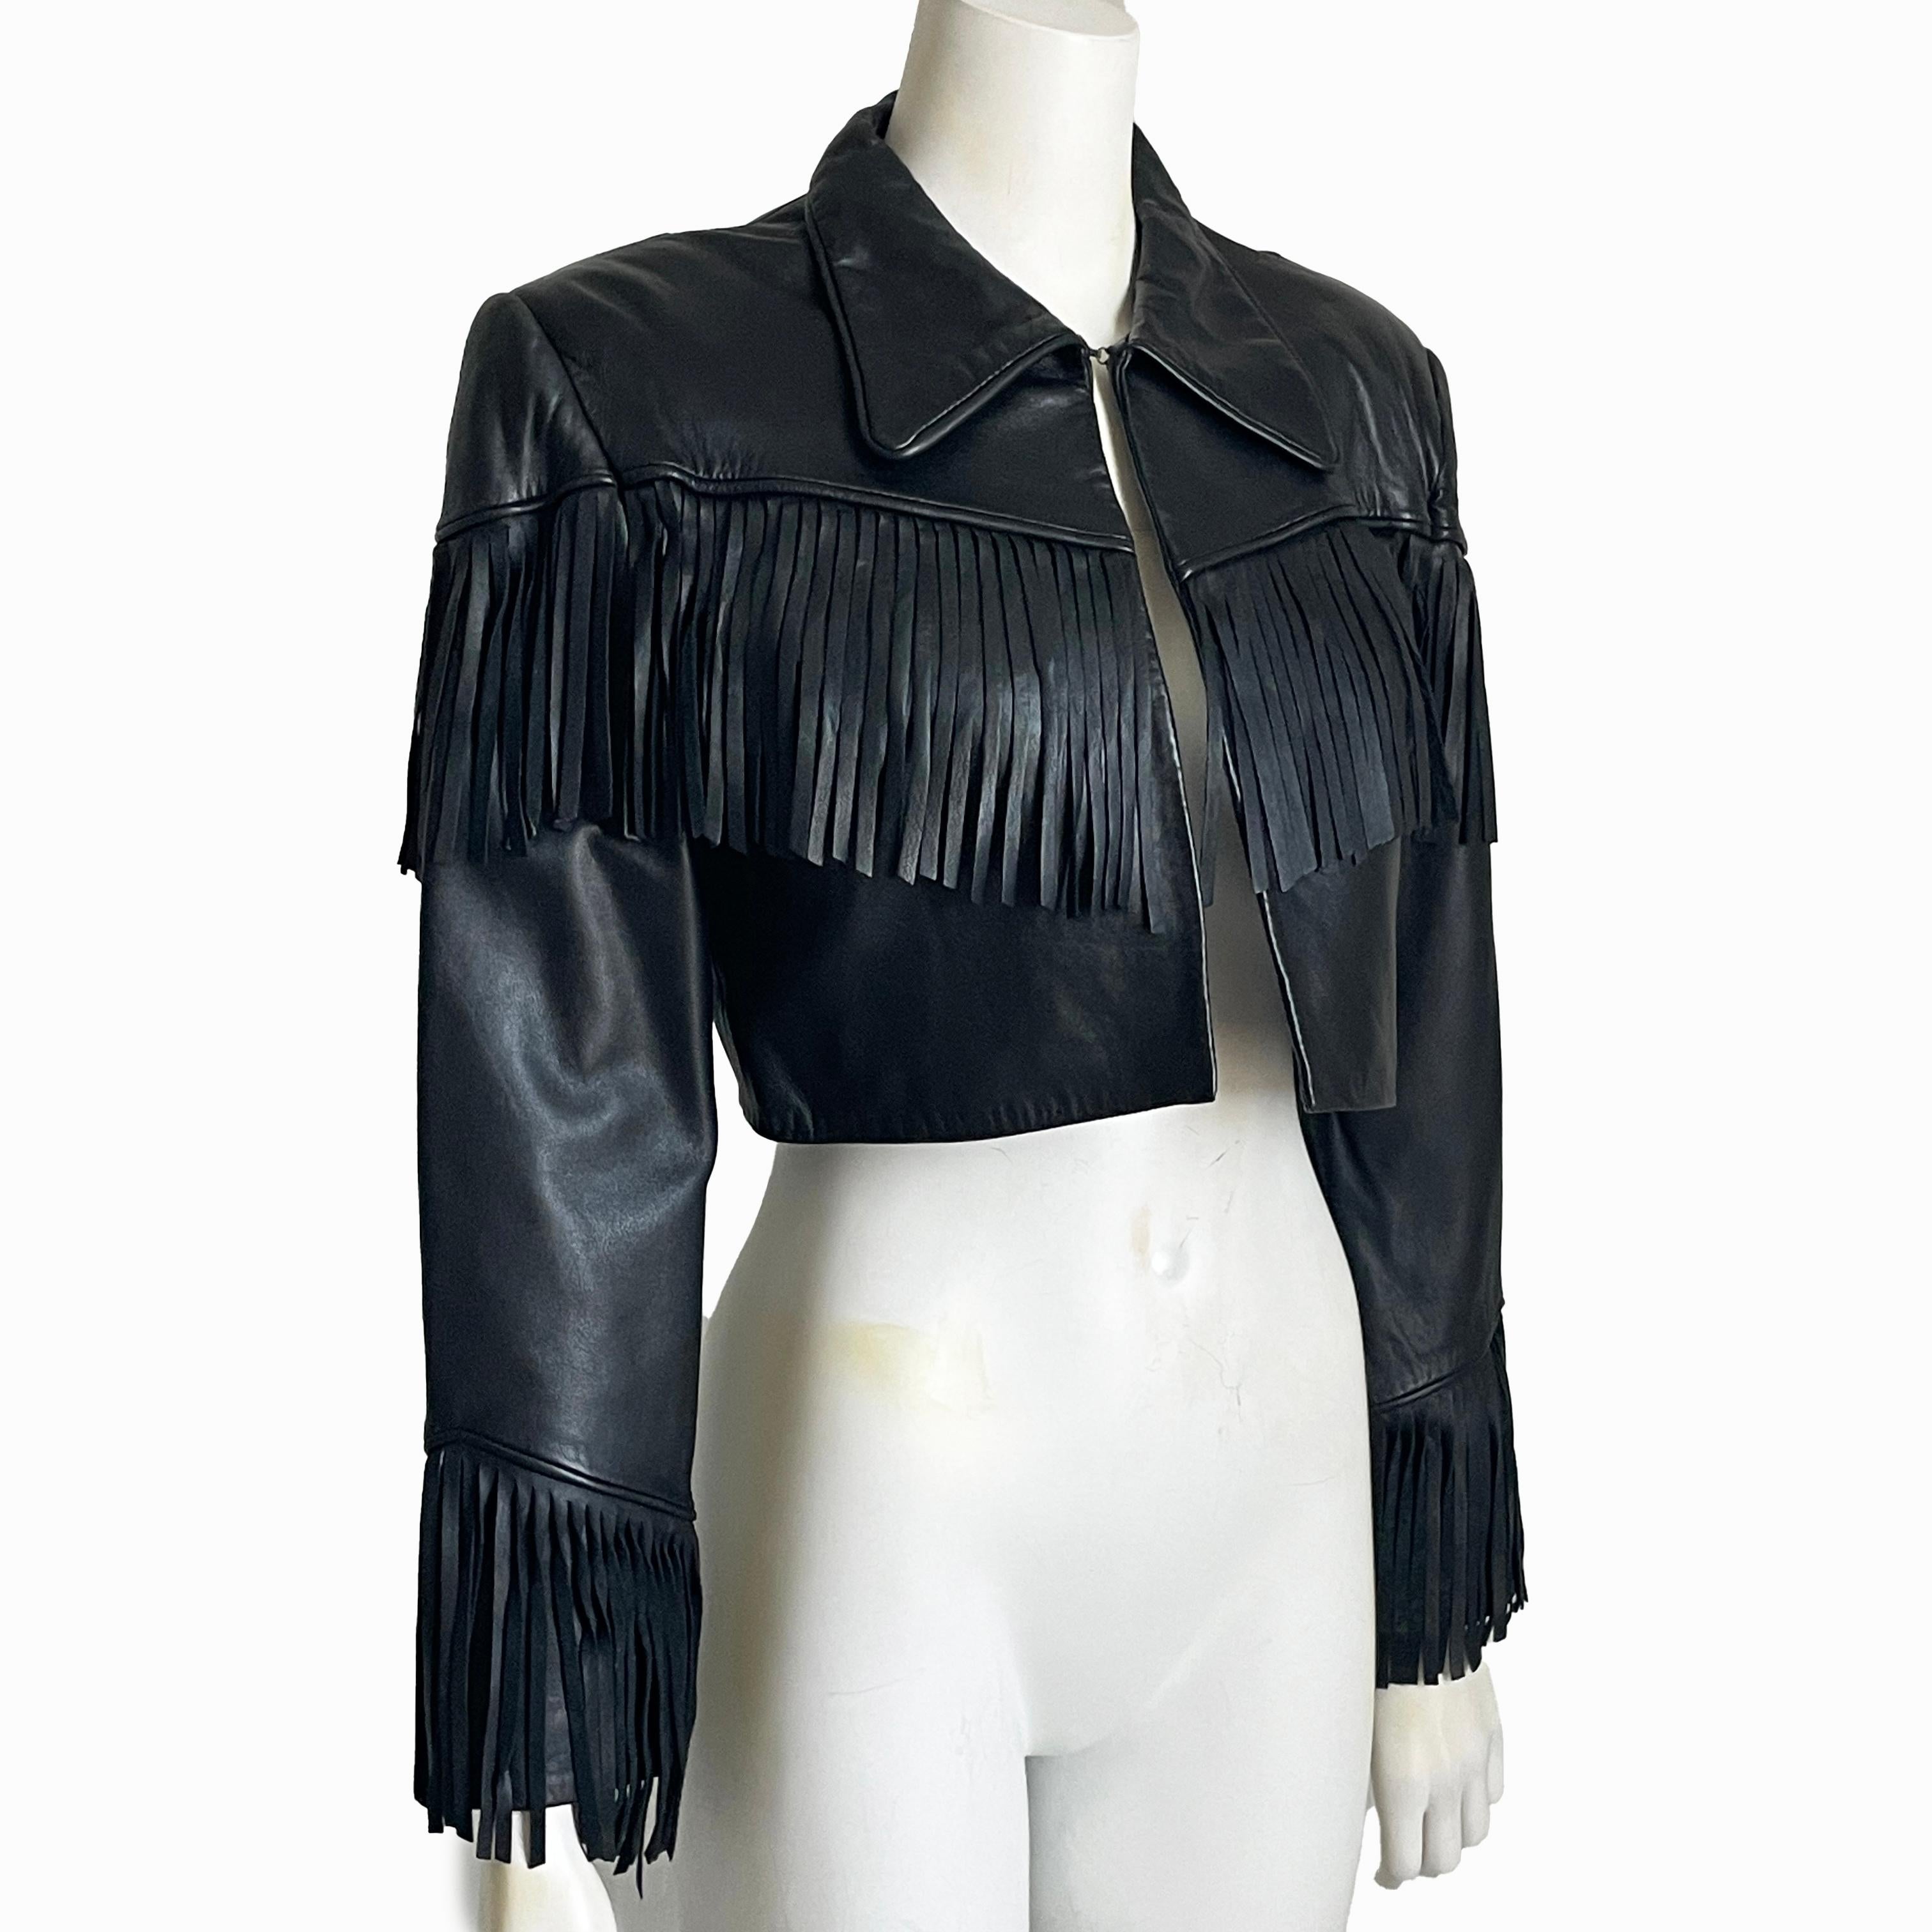 Gebrauchte, schwarze Norma Kamali Lederjacke mit Fransen, wahrscheinlich aus den frühen 90er Jahren.  Sie ist aus geschmeidigem Lammleder gefertigt, mit schwarzem Satin gefüttert und wird mit einem einzigen Haken-Ösen-Verschluss am Kragen